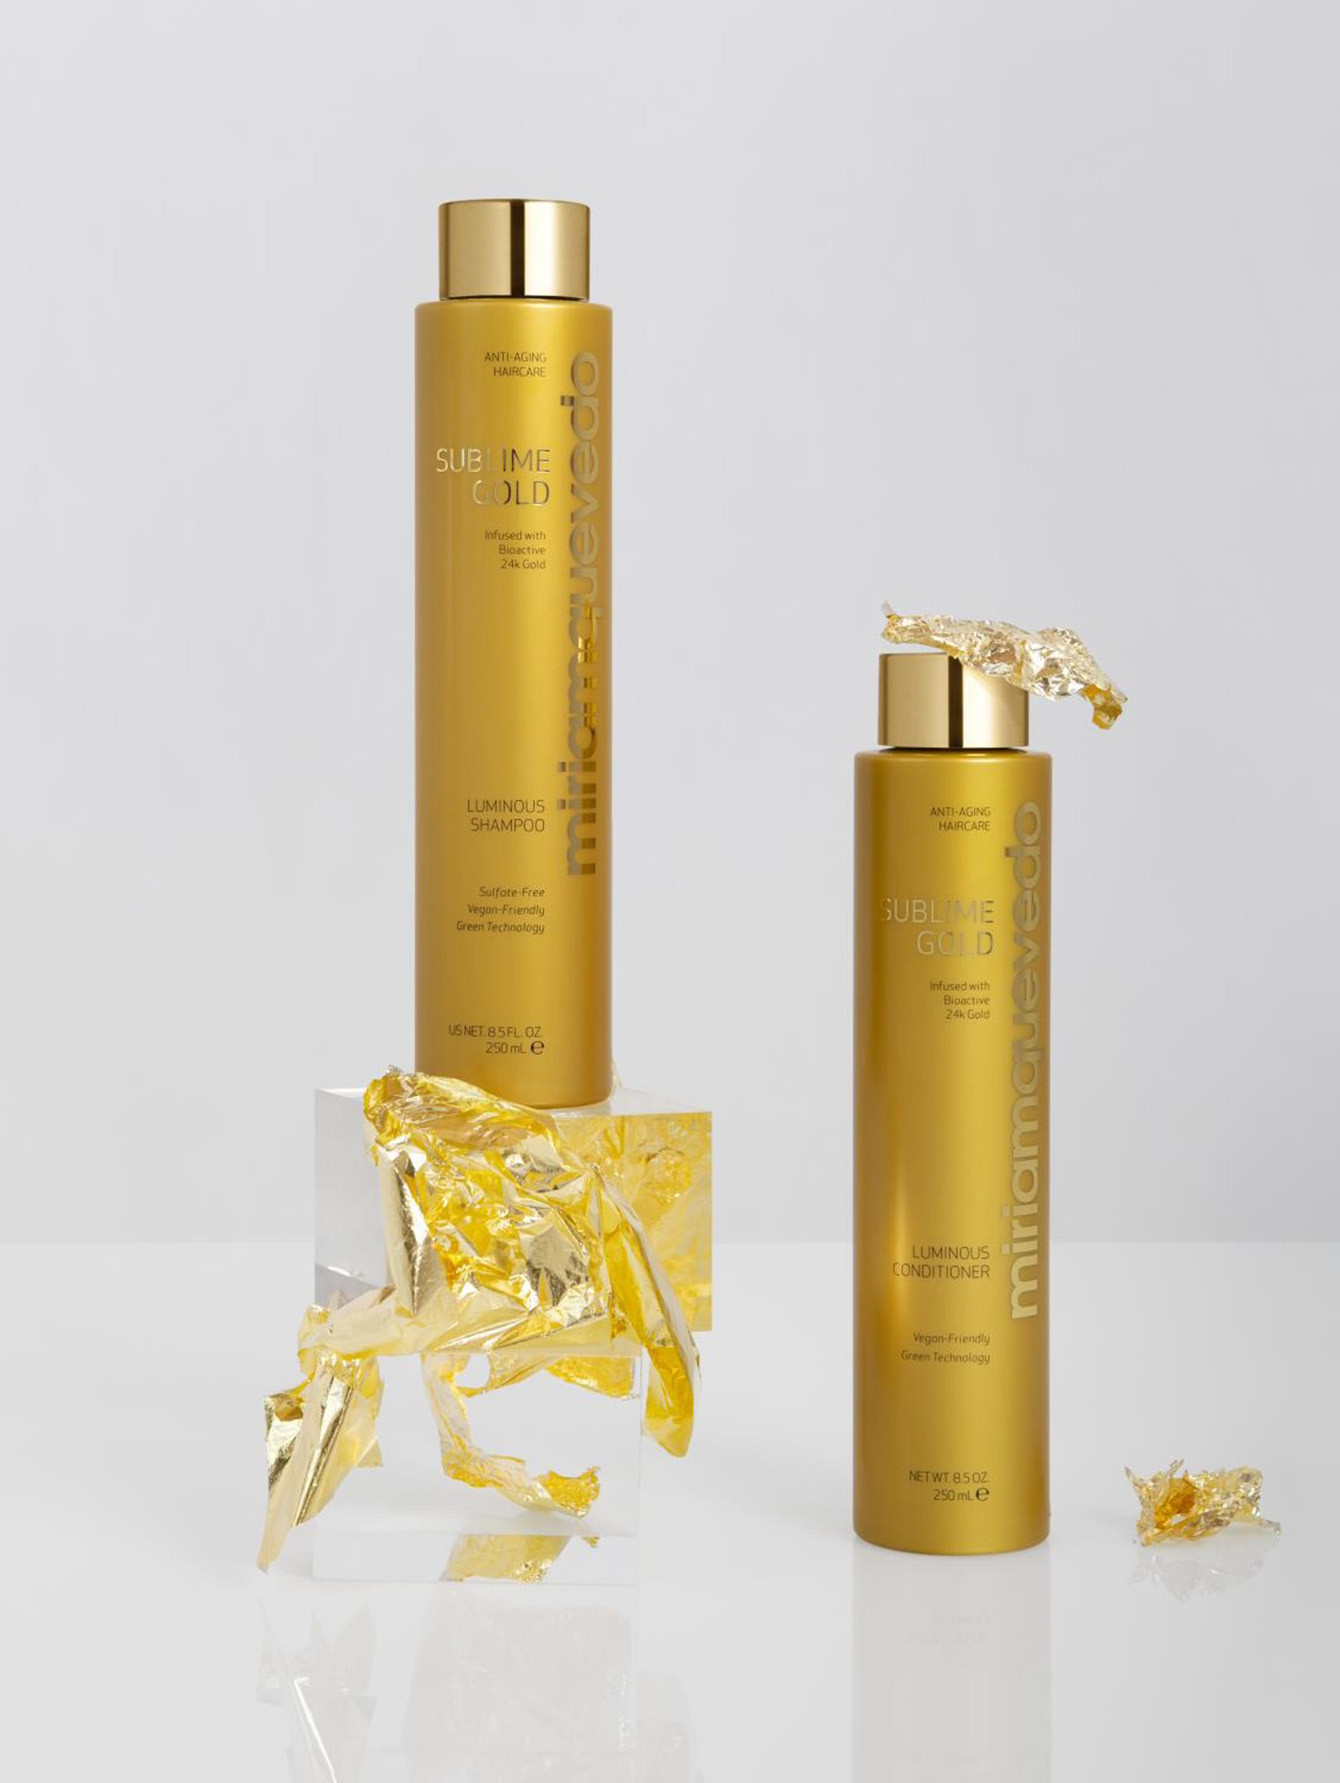 Шампунь для сияния волос Sublime Gold Luminous Shampoo, 250 мл - Обтравка1